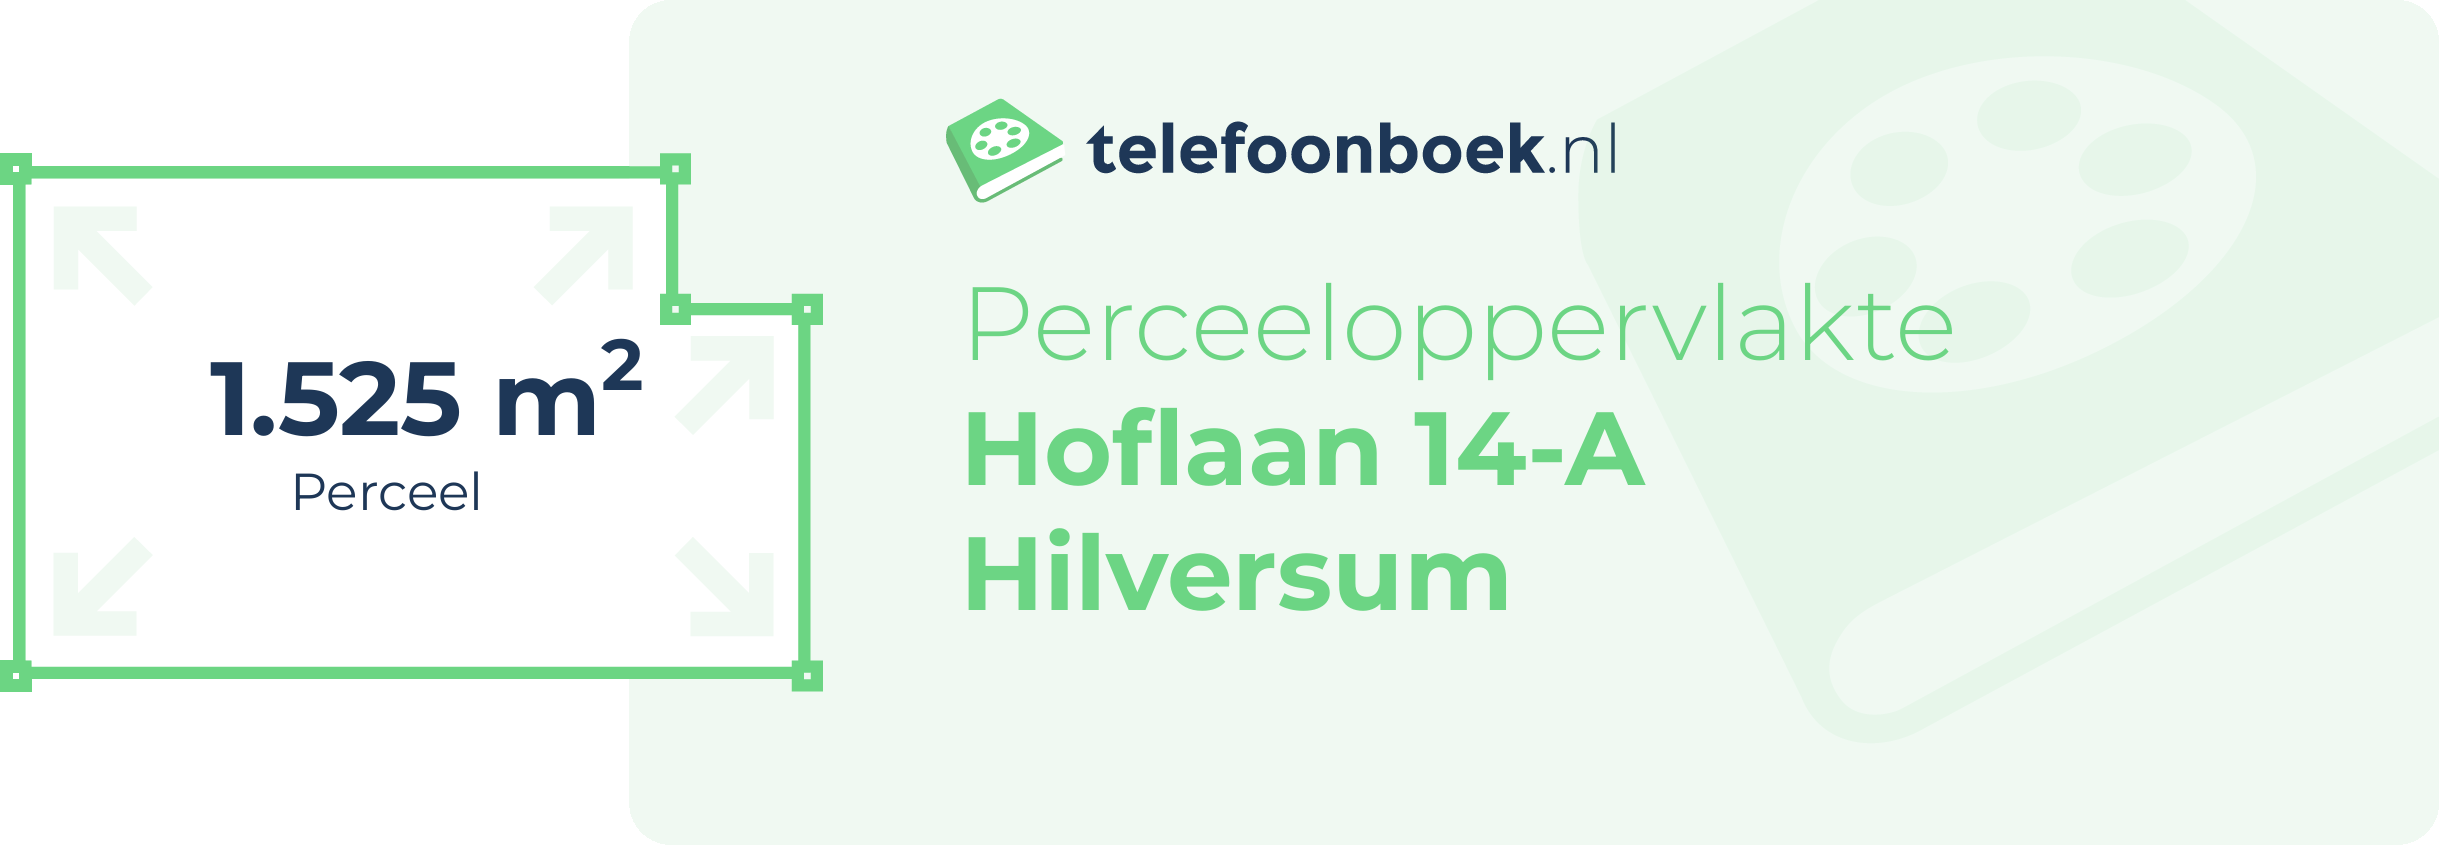 Perceeloppervlakte Hoflaan 14-A Hilversum